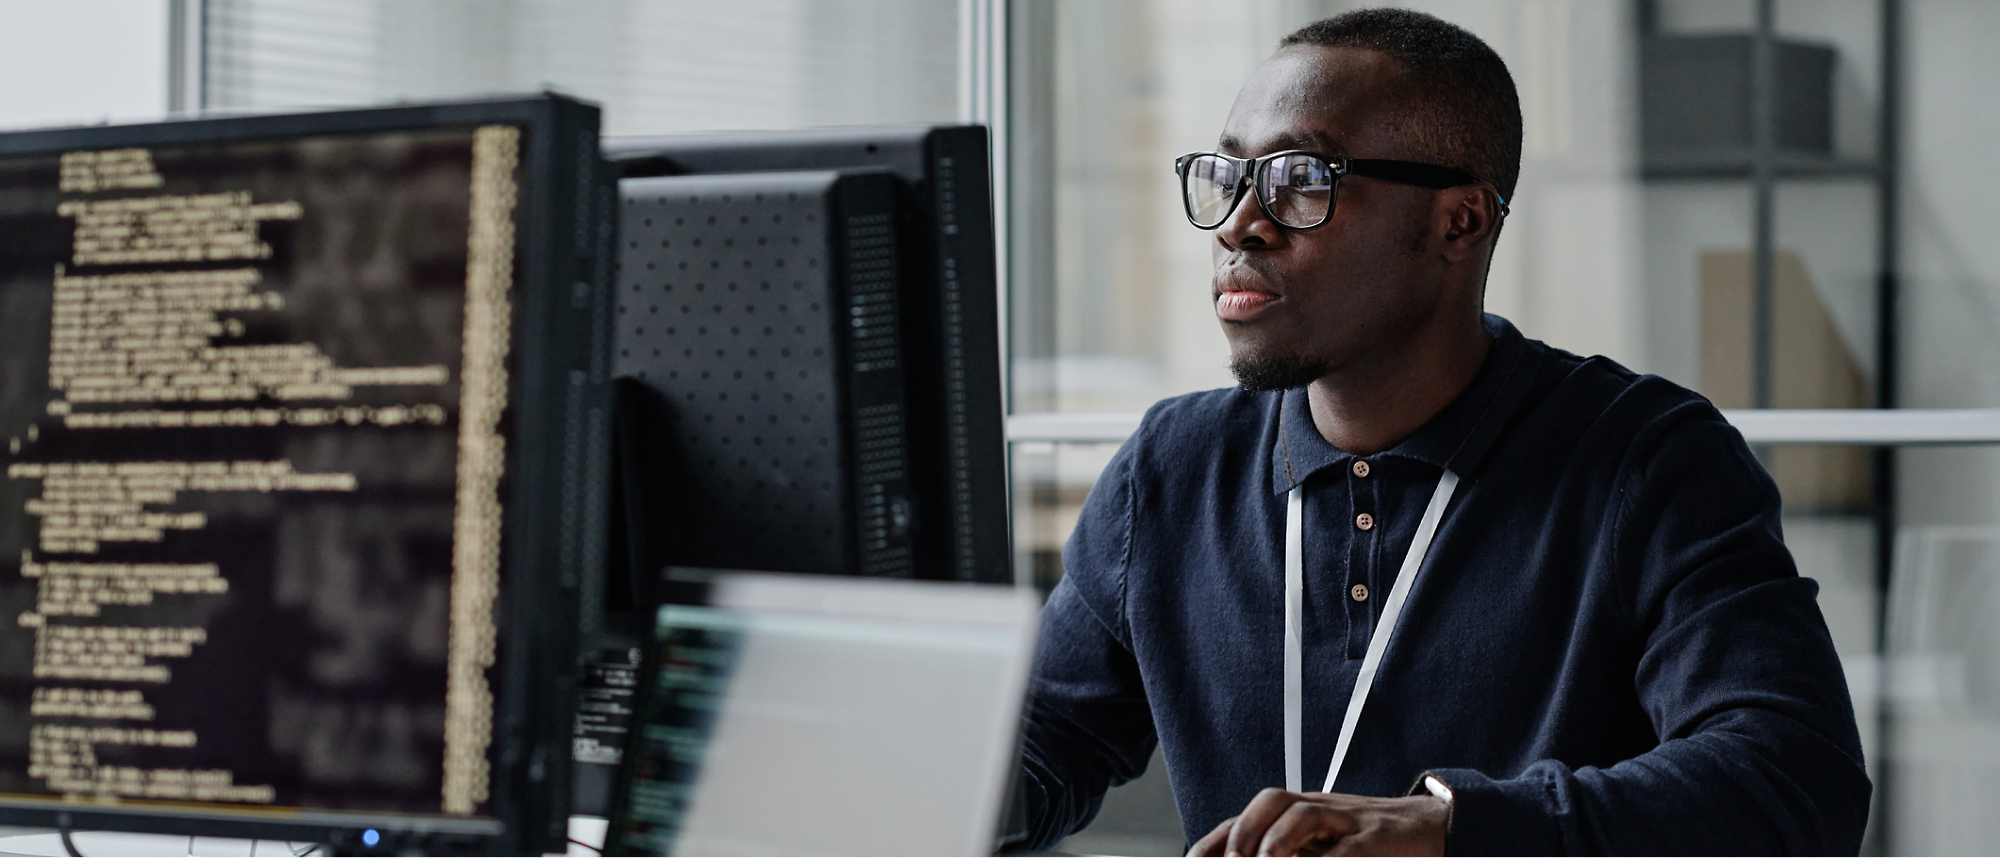 眼鏡をかけて暗い色のシャツを着た男性が、オフィス環境で画面にコード行が表示されているコンピューターに向かって作業をしている。